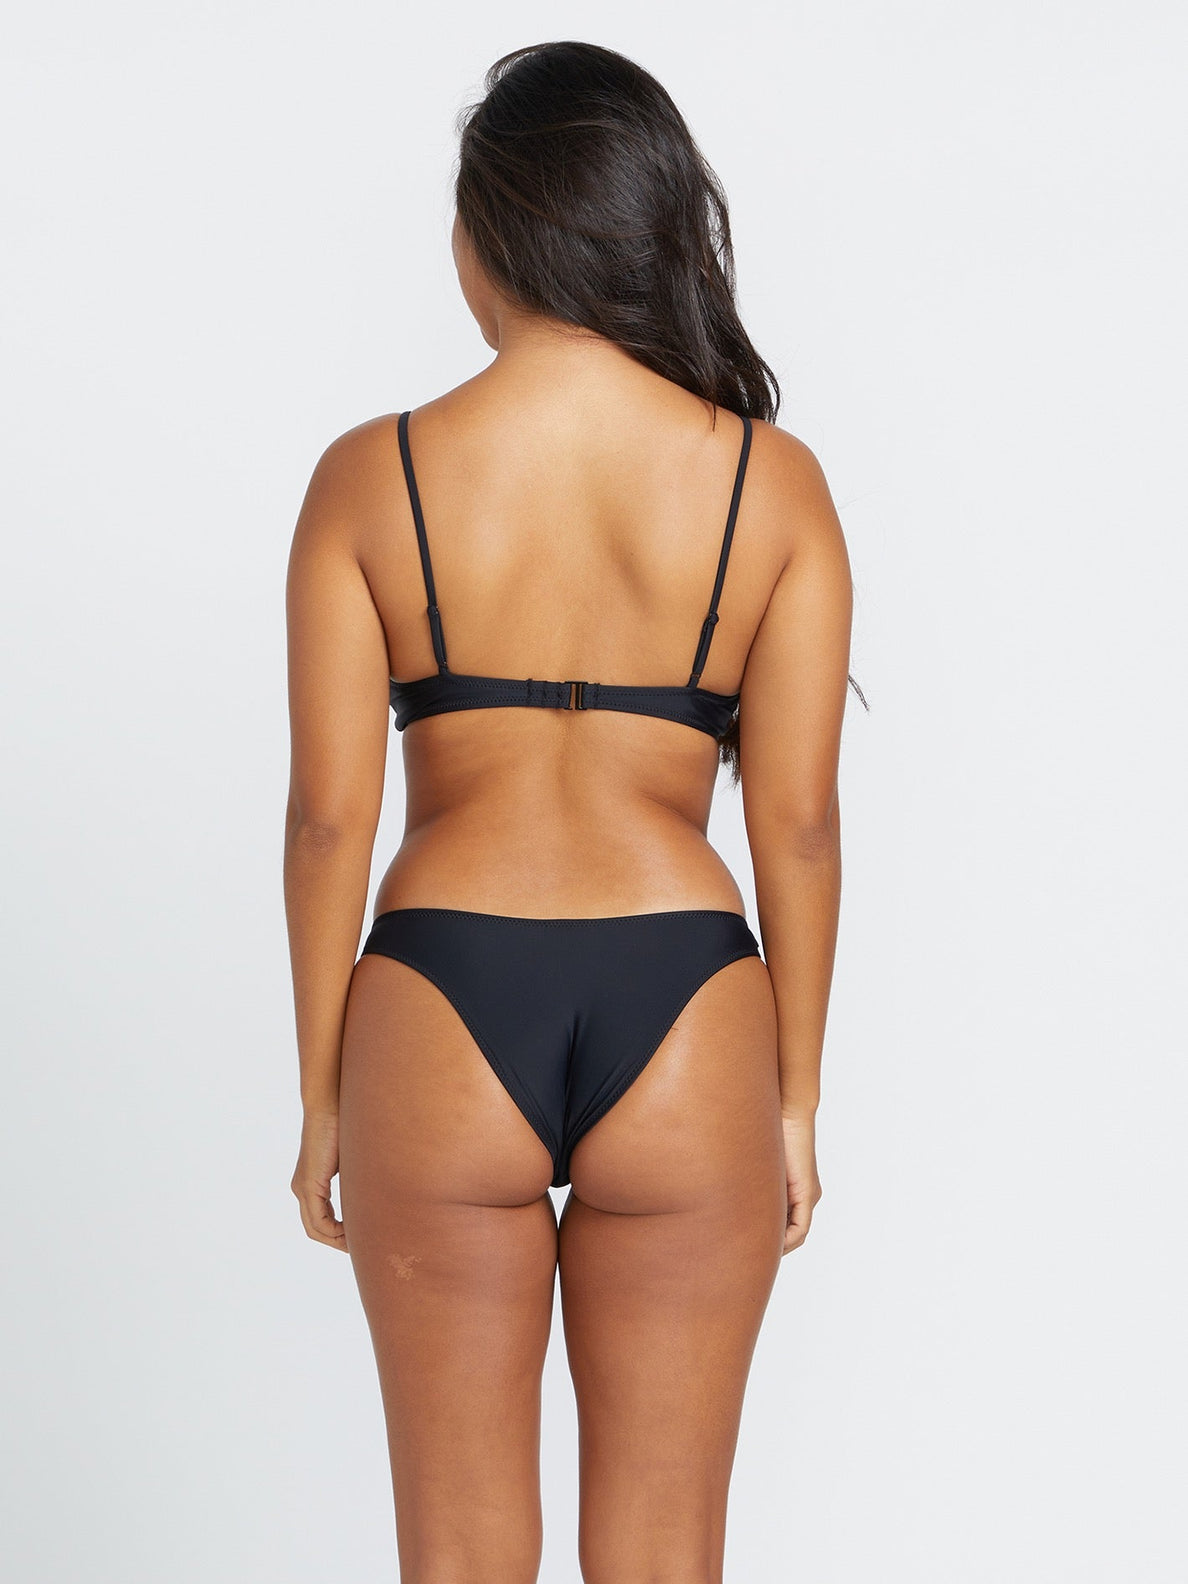 Simply Solid Crop Bikini Top - Black